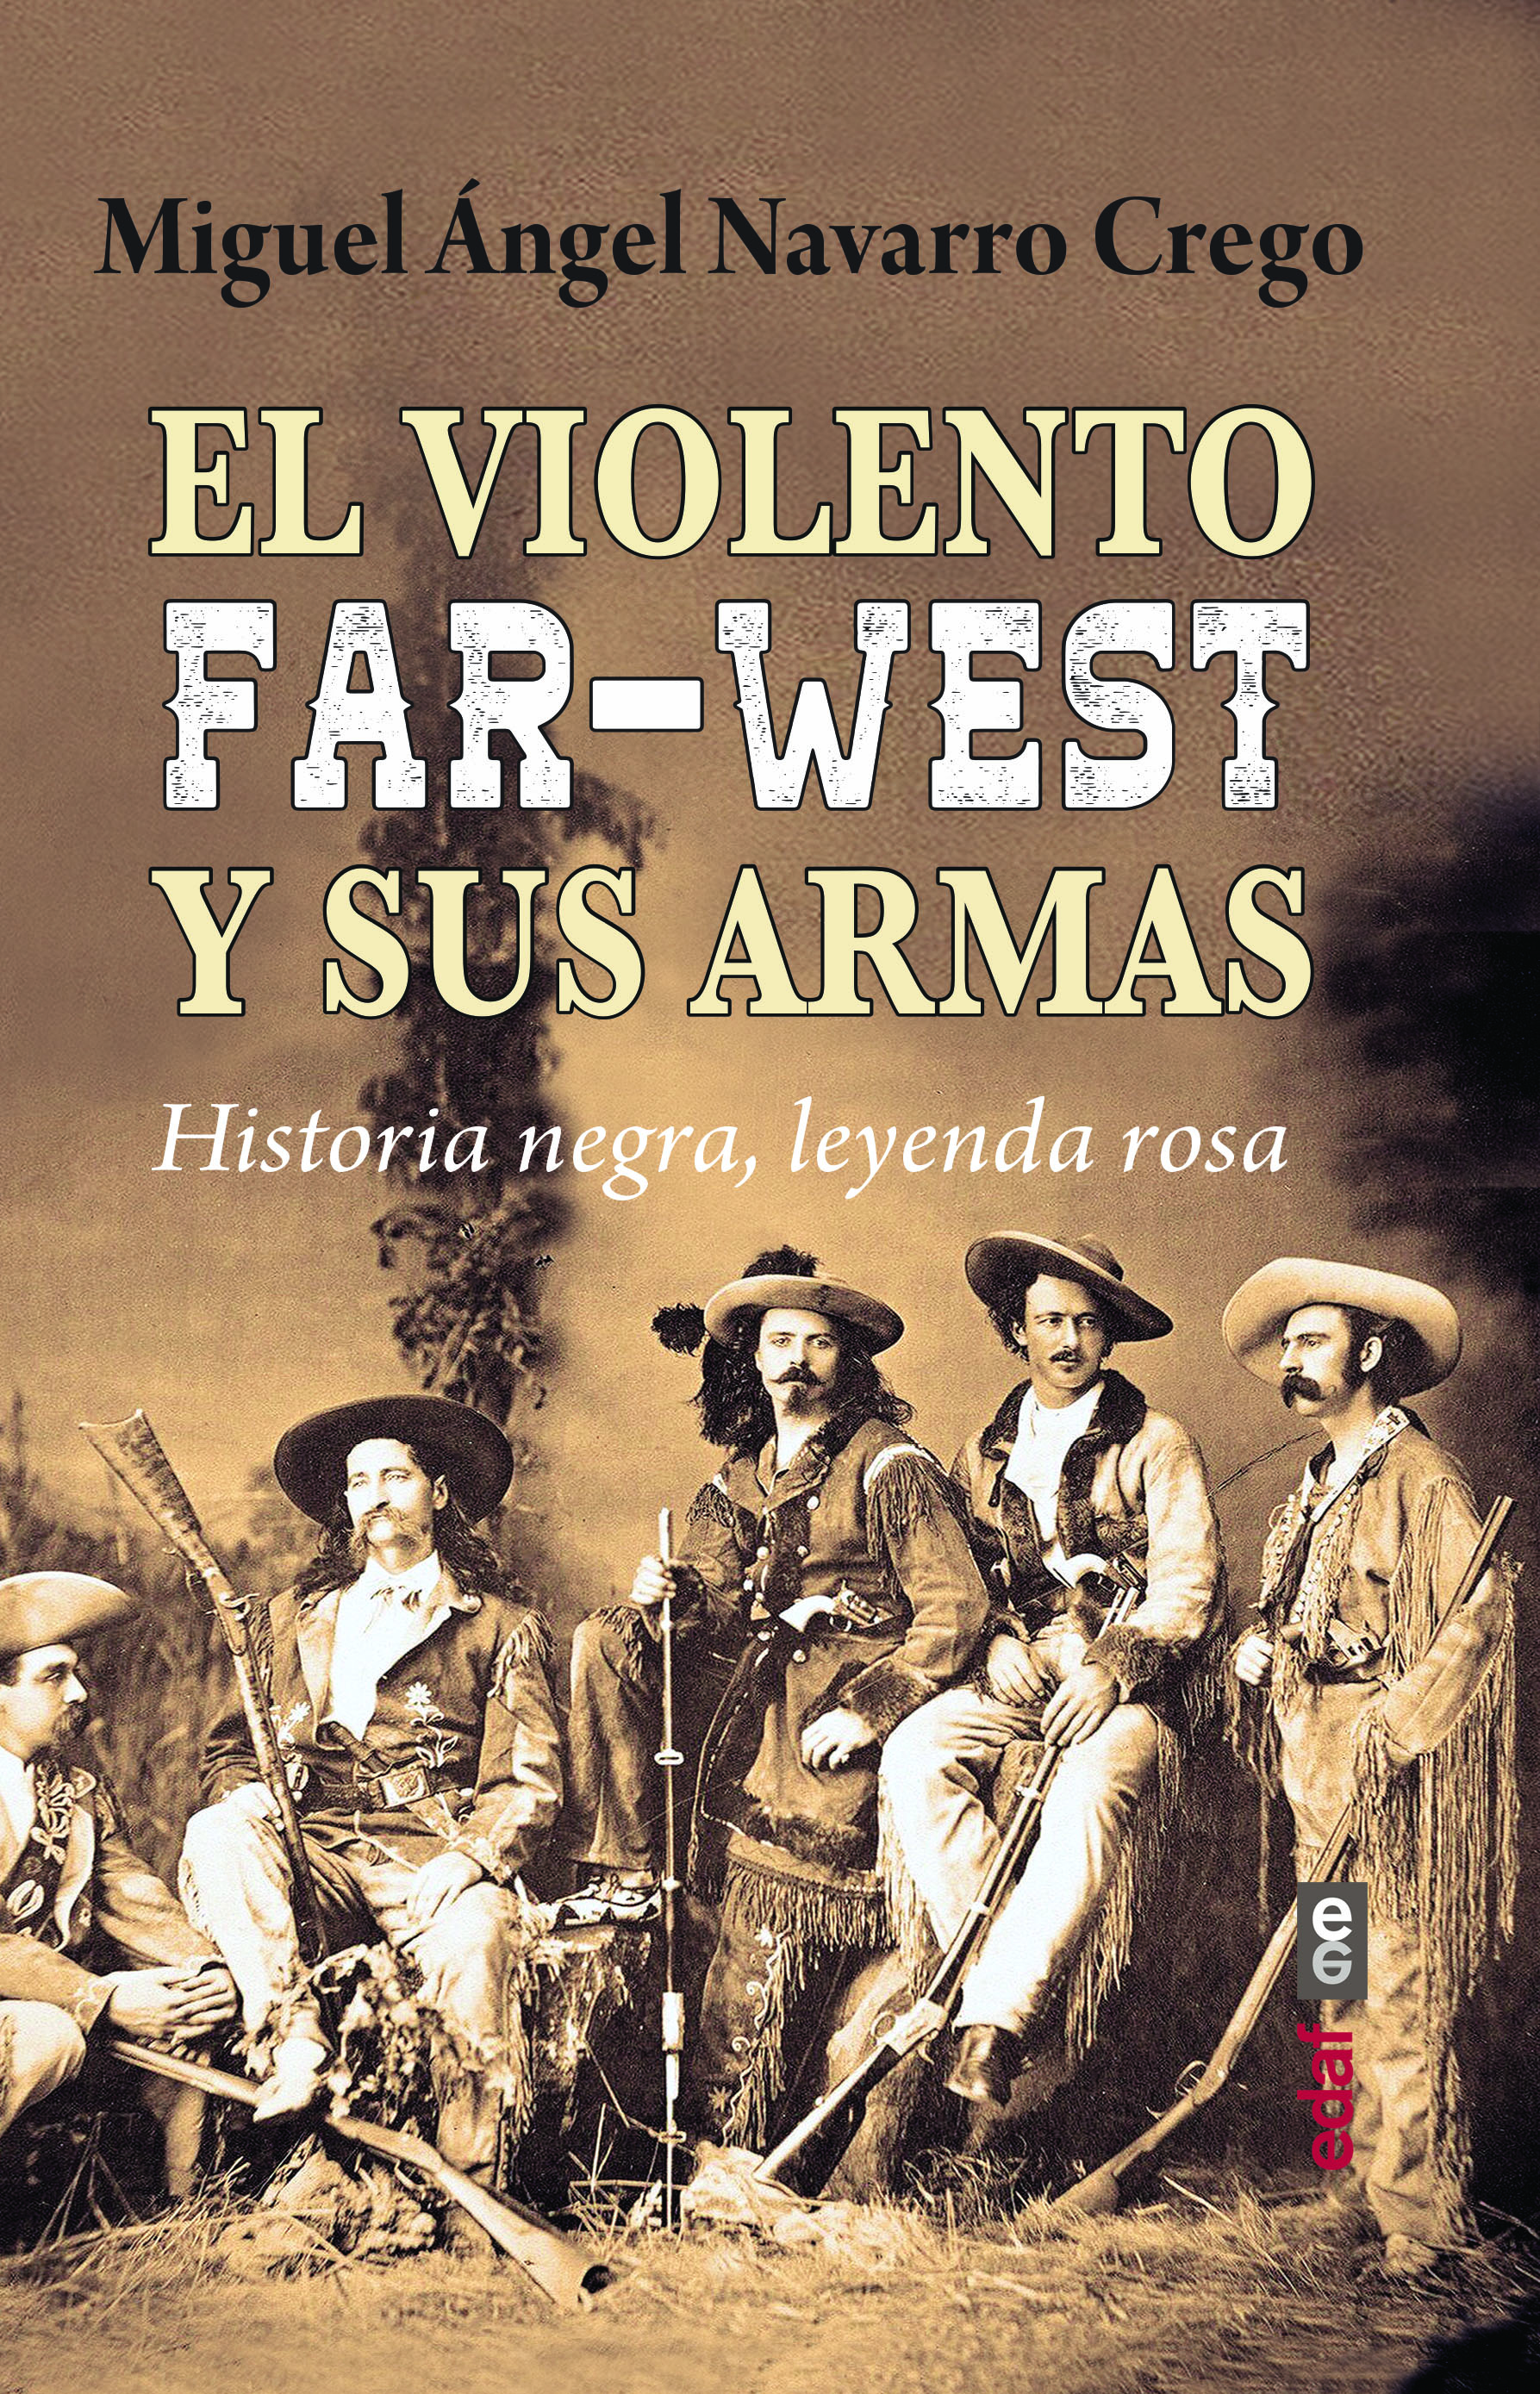 El violento Far-West y sus armas